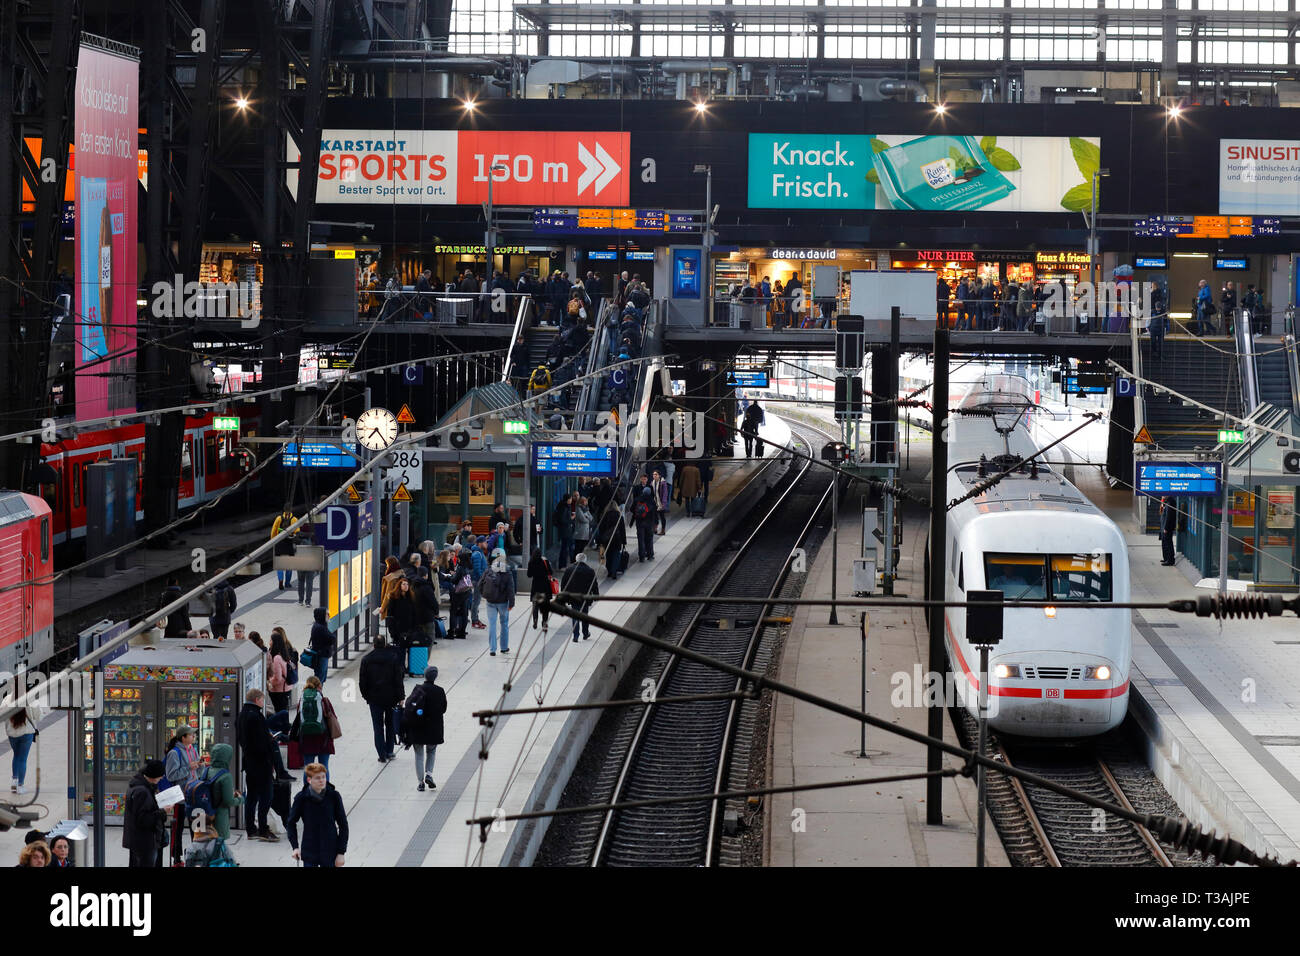 Blick auf einen überfüllten und geschäftigen Bahnhof am Hamburger Hbf, Hamburg. Hamburger Hauptbahnhof Stockfoto